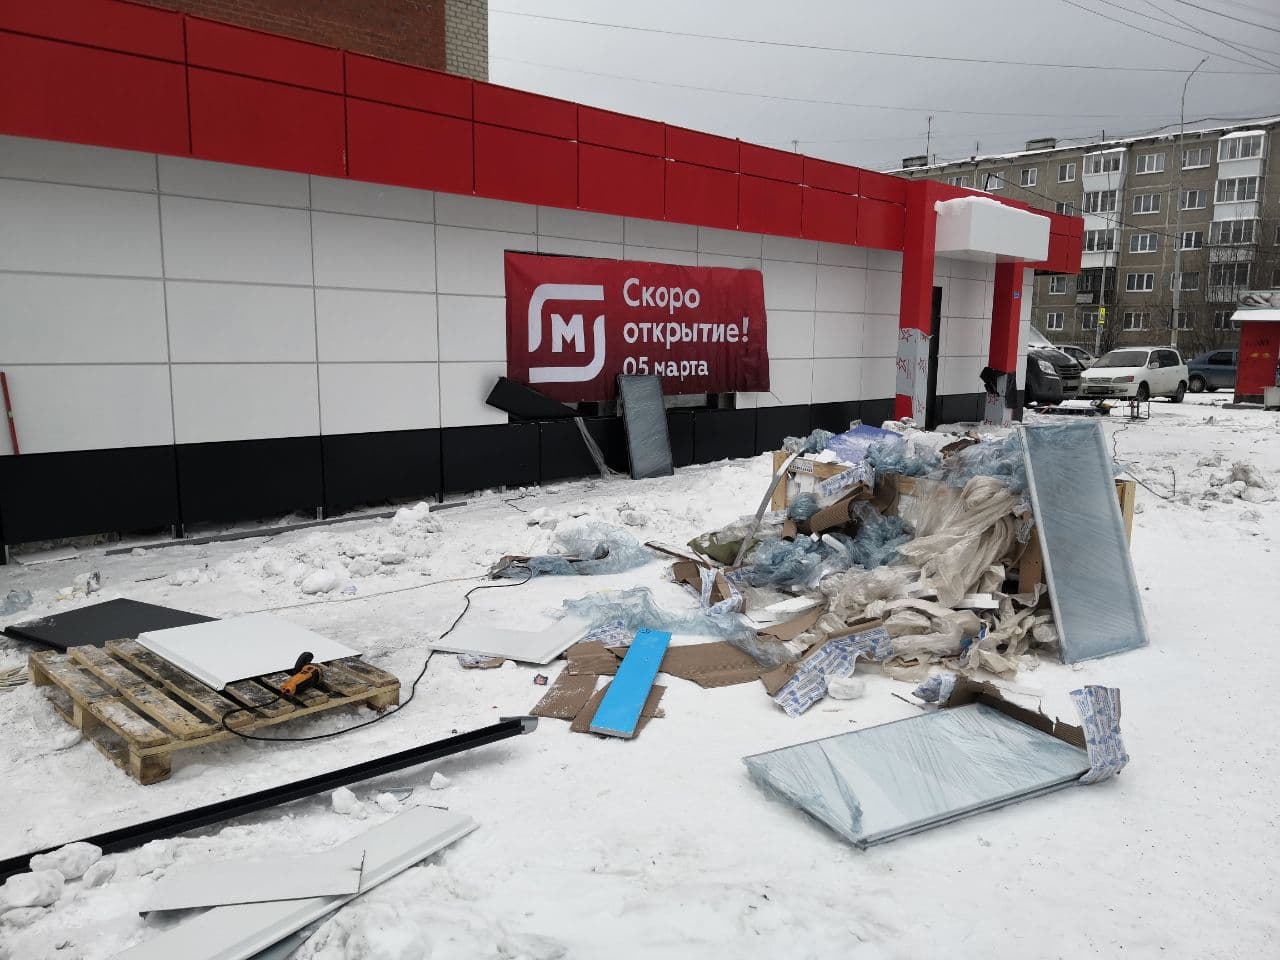 В среду, 3 марта, рабочие, ремонтирующие помещение, завалили тротуар строительным мусором. Фото Евгения Зиновьева